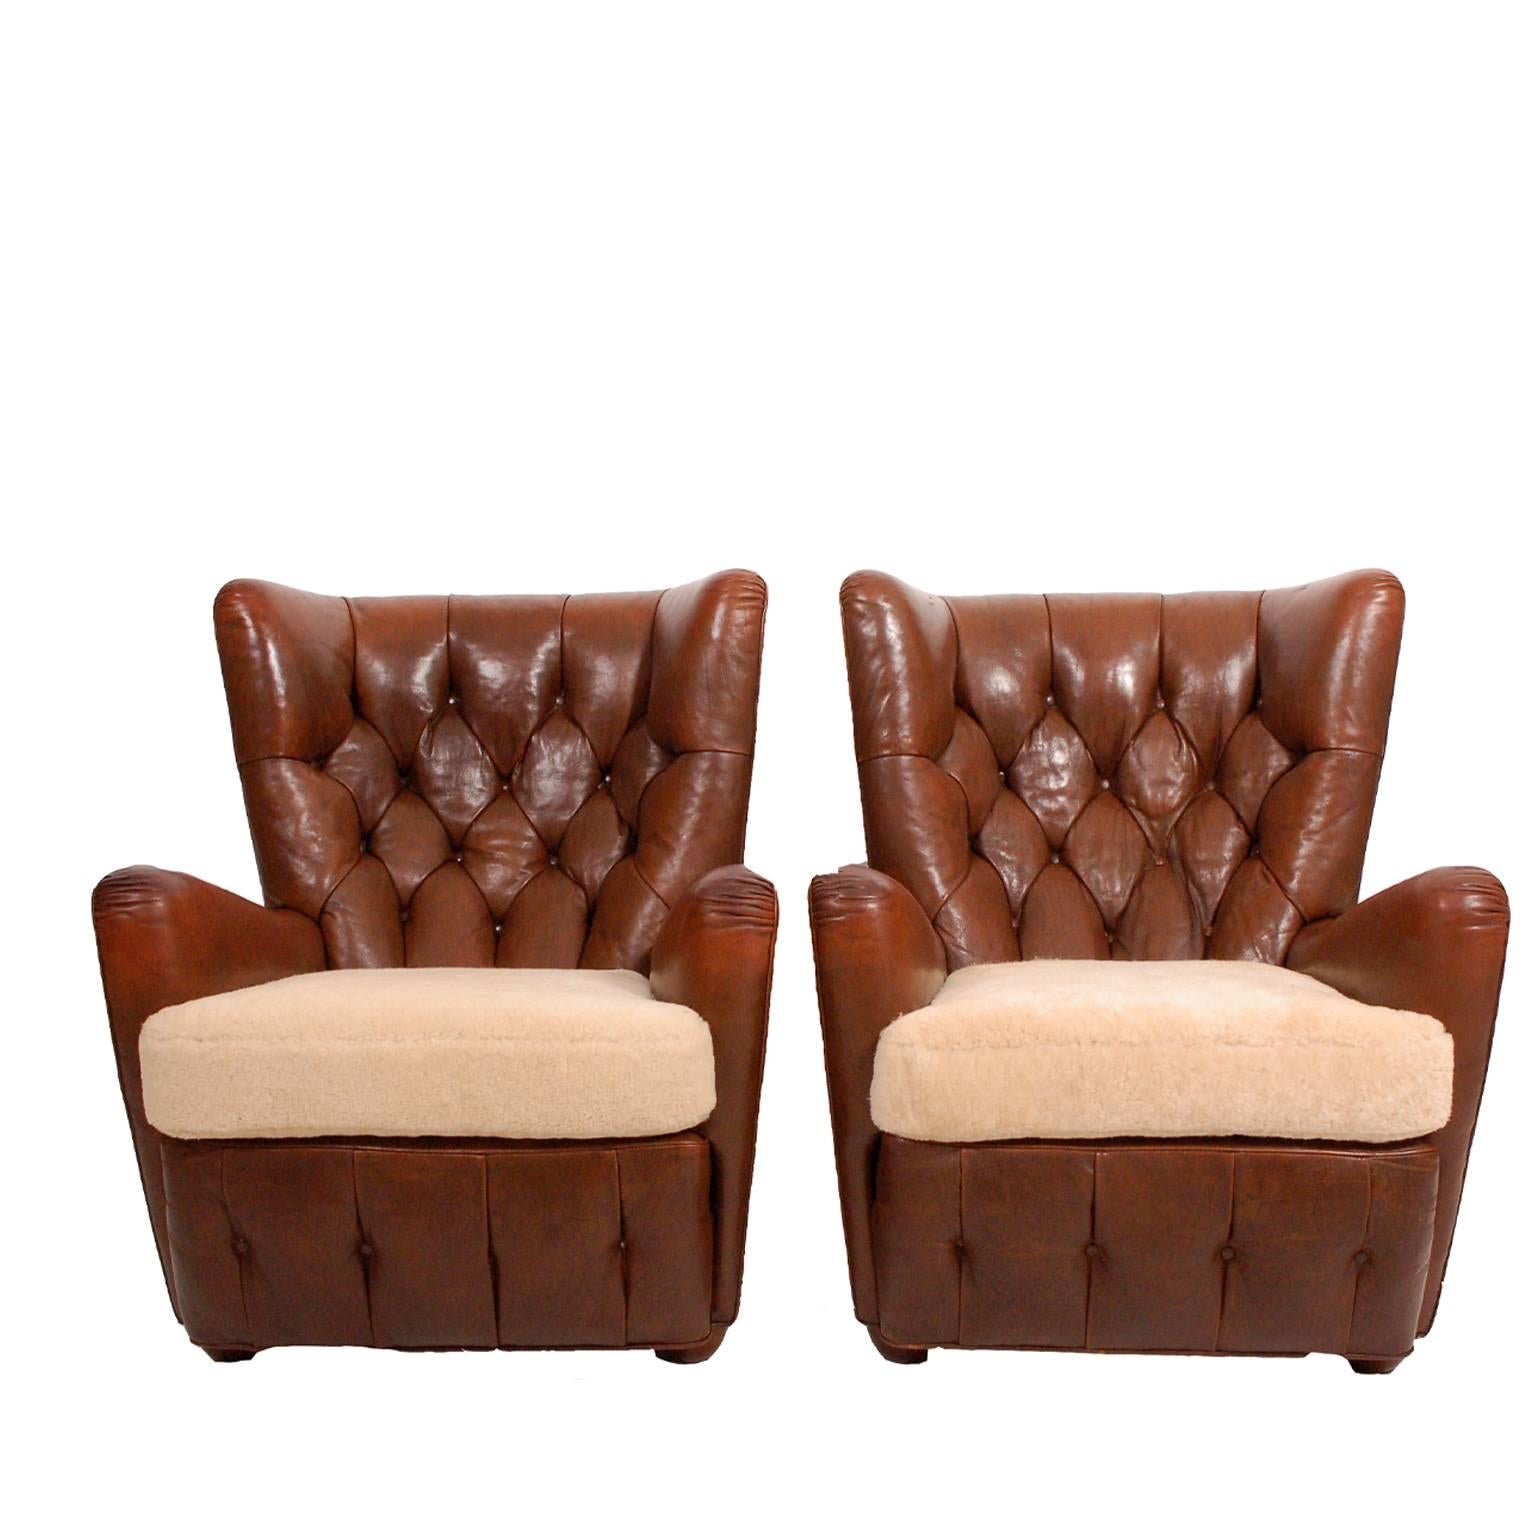 Chesterfield-Sessel im Stil der 1930er Jahre mit hoher Rückenlehne aus Leder, Rückenlehne und Sockel mit Knöpfen, Sitzen aus Schaffell und original braunem Leder. Beide sind mit Messingnägeln verziert. Auf Buchenholzfüßen sitzend. Wird nur als Paar